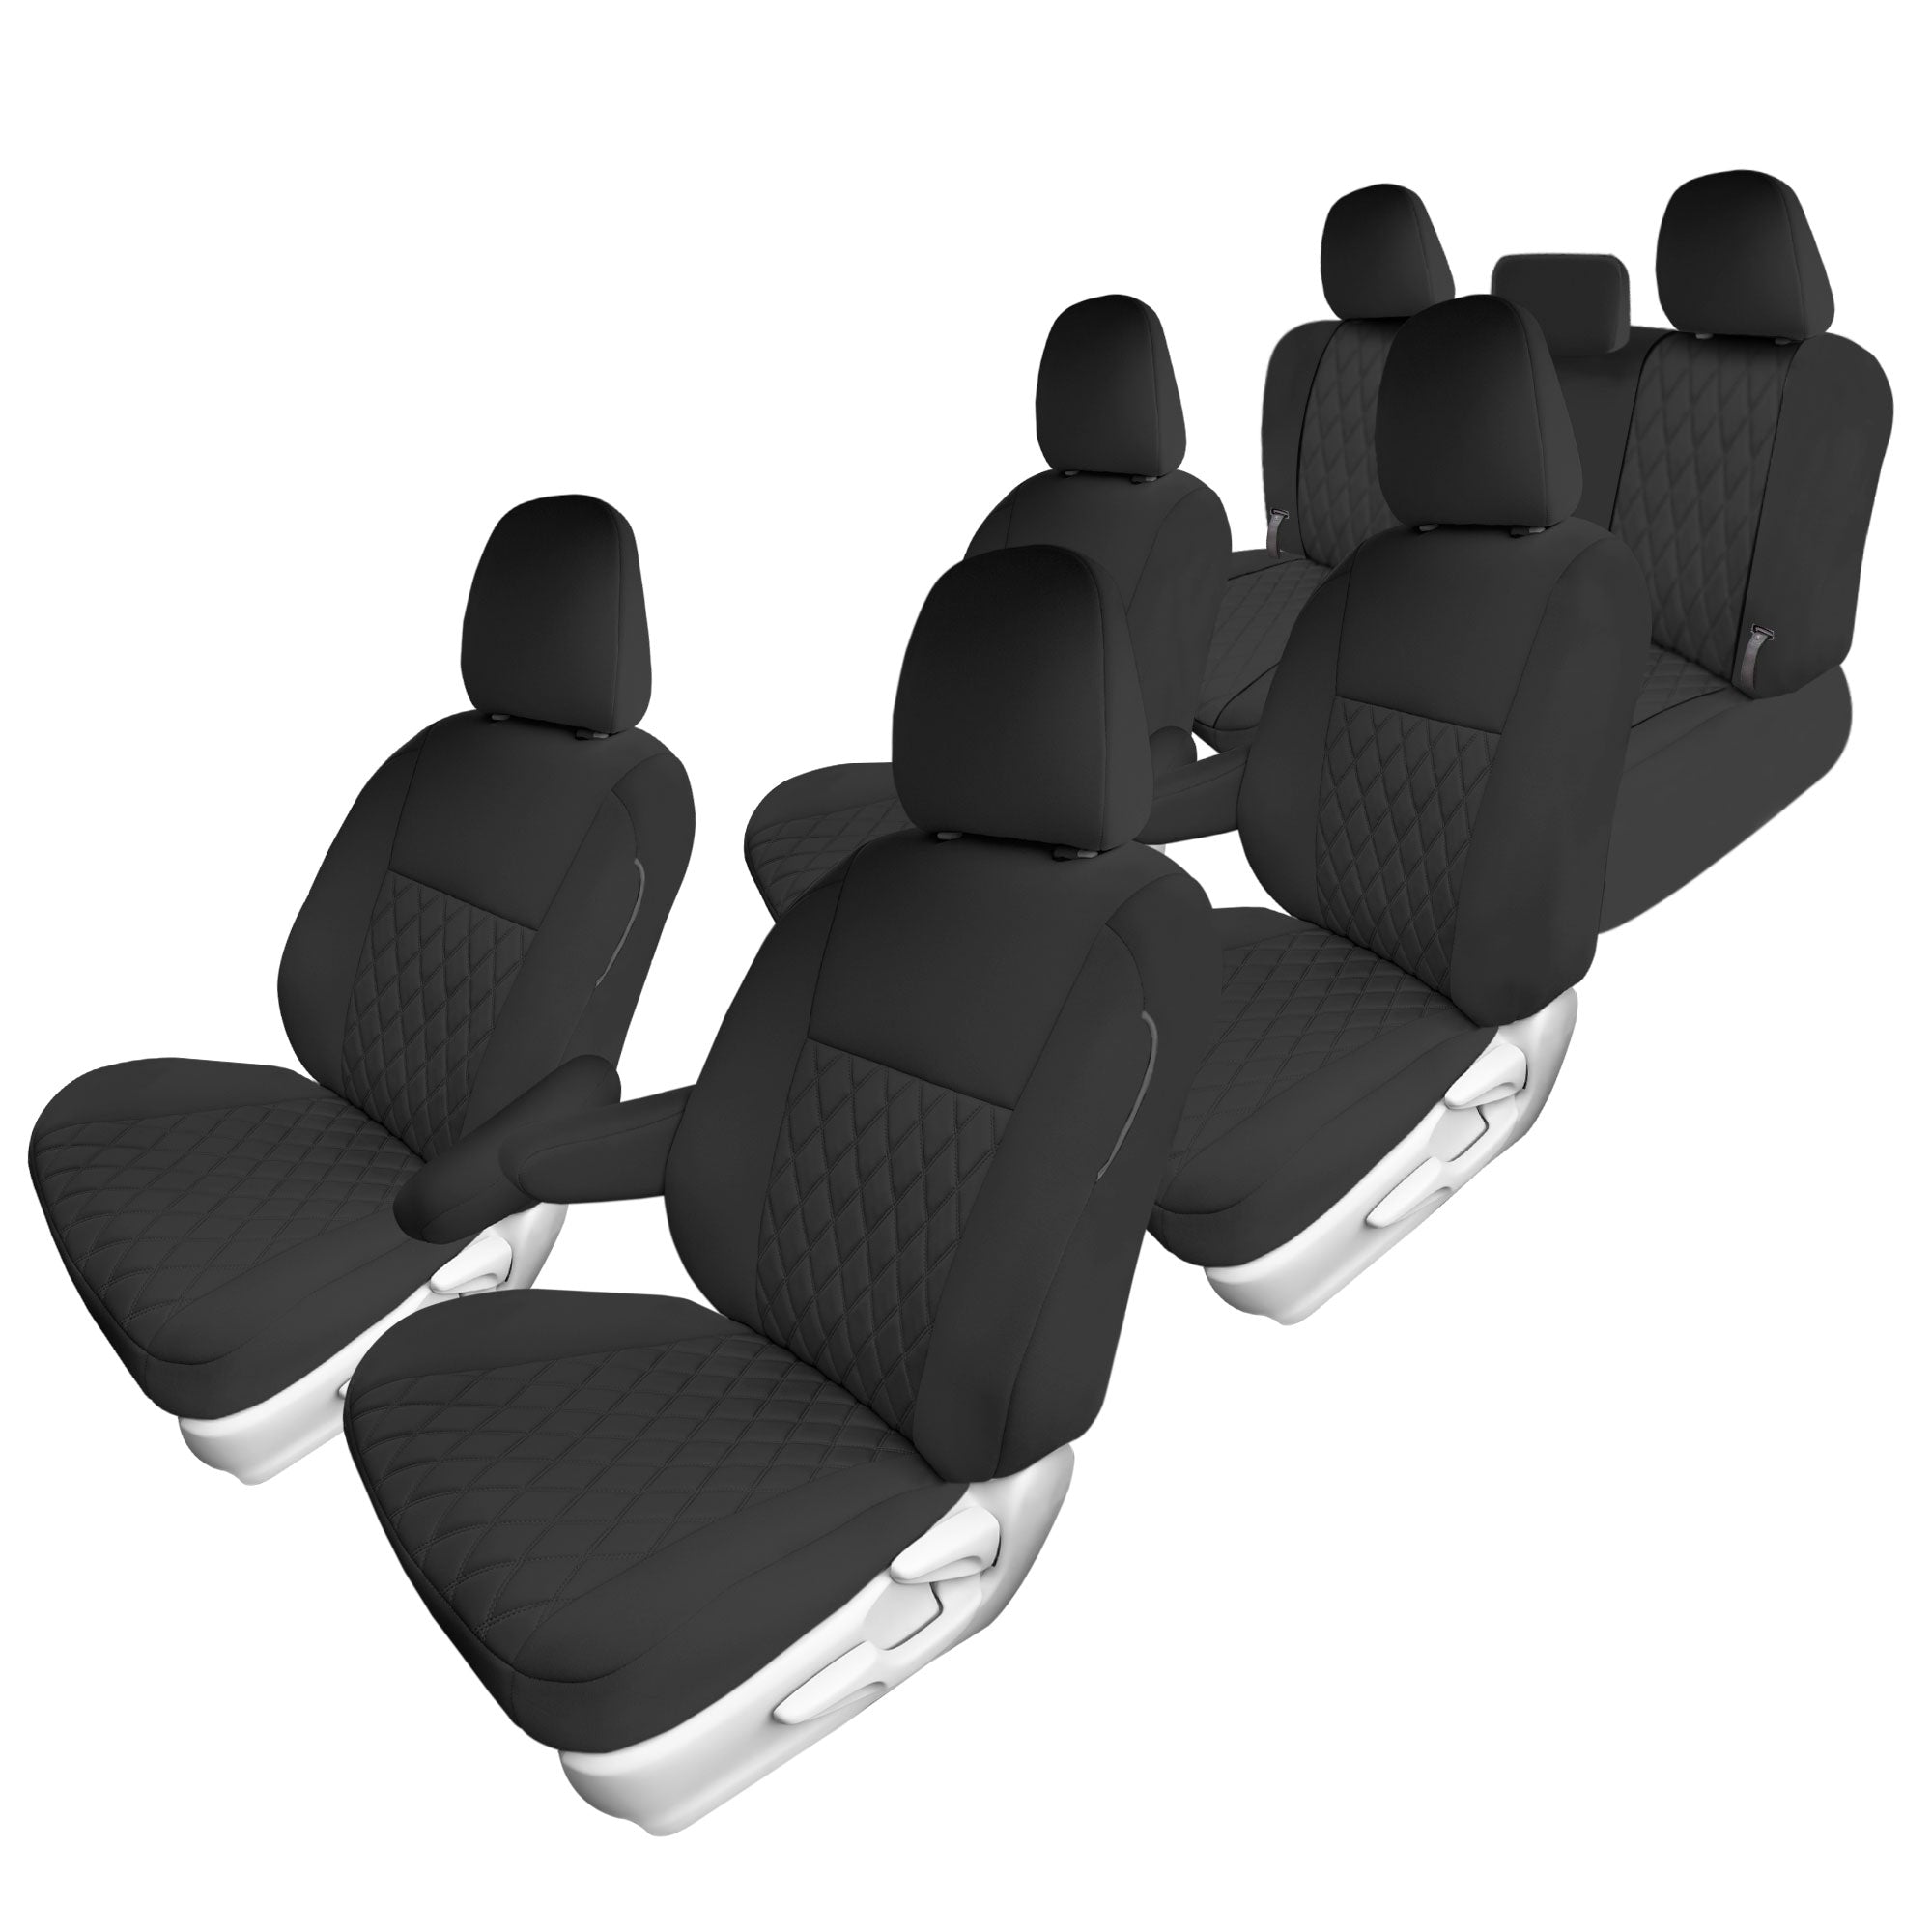 Toyota Sienna - 2011 - 2020 - Full Set Seat Covers - Black Ultraflex Neoprene